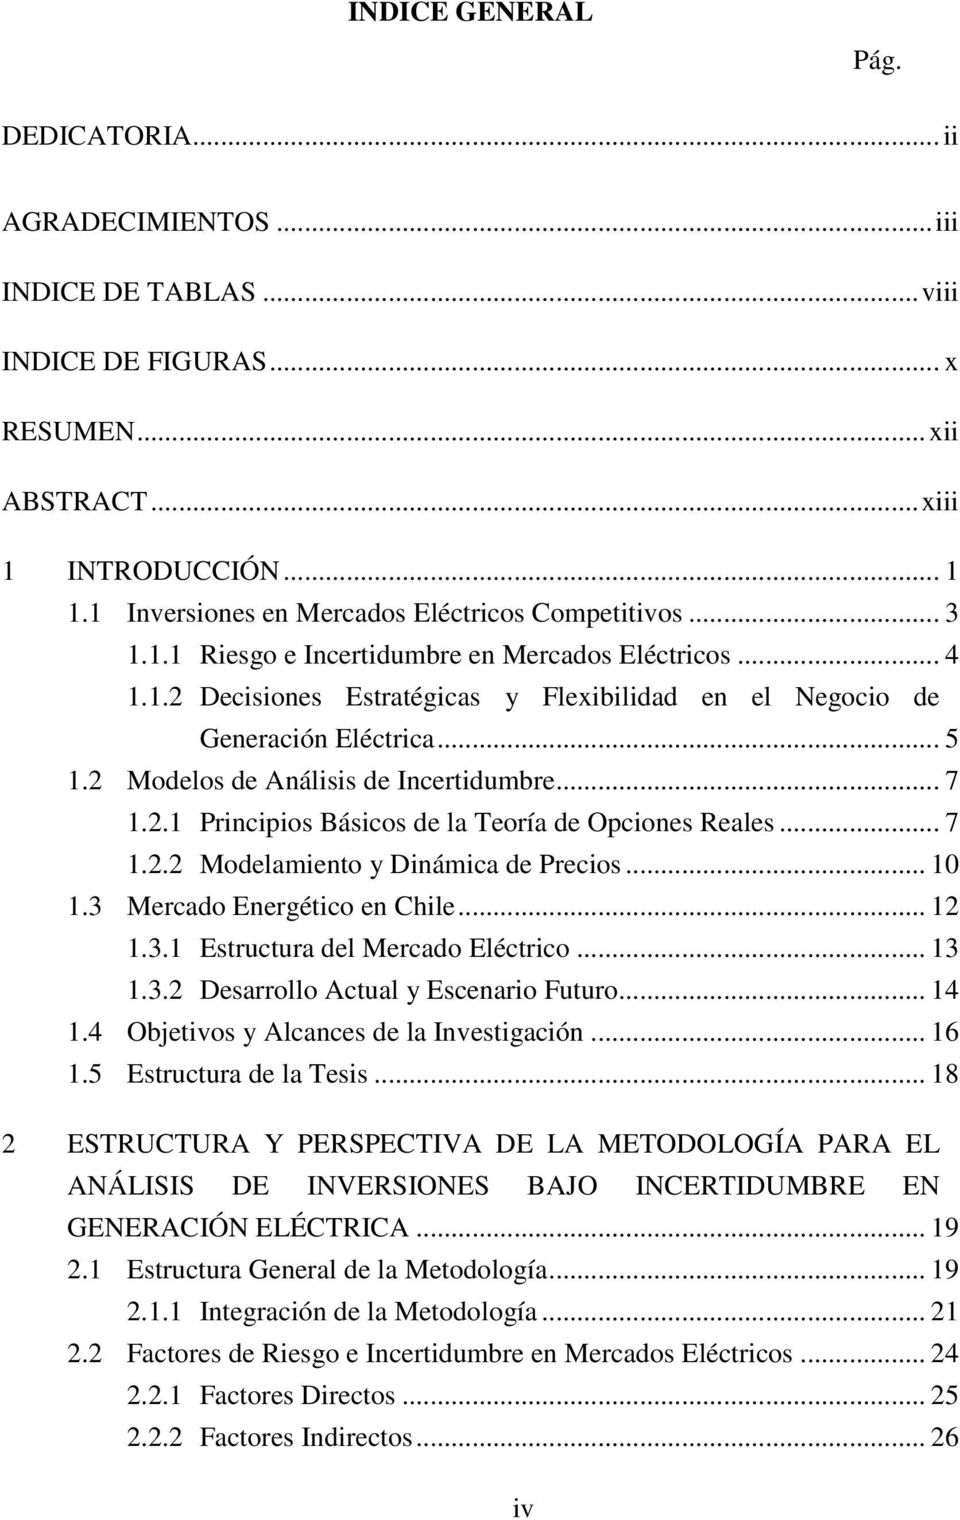 2 Modelos de Análisis de Inceridumbre... 7 1.2.1 Principios Básicos de la Teoría de Opciones Reales... 7 1.2.2 Modelamieno y Dinámica de Precios... 10 1.3 Mercado Energéico en Chile... 12 1.3.1 Esrucura del Mercado Elécrico.